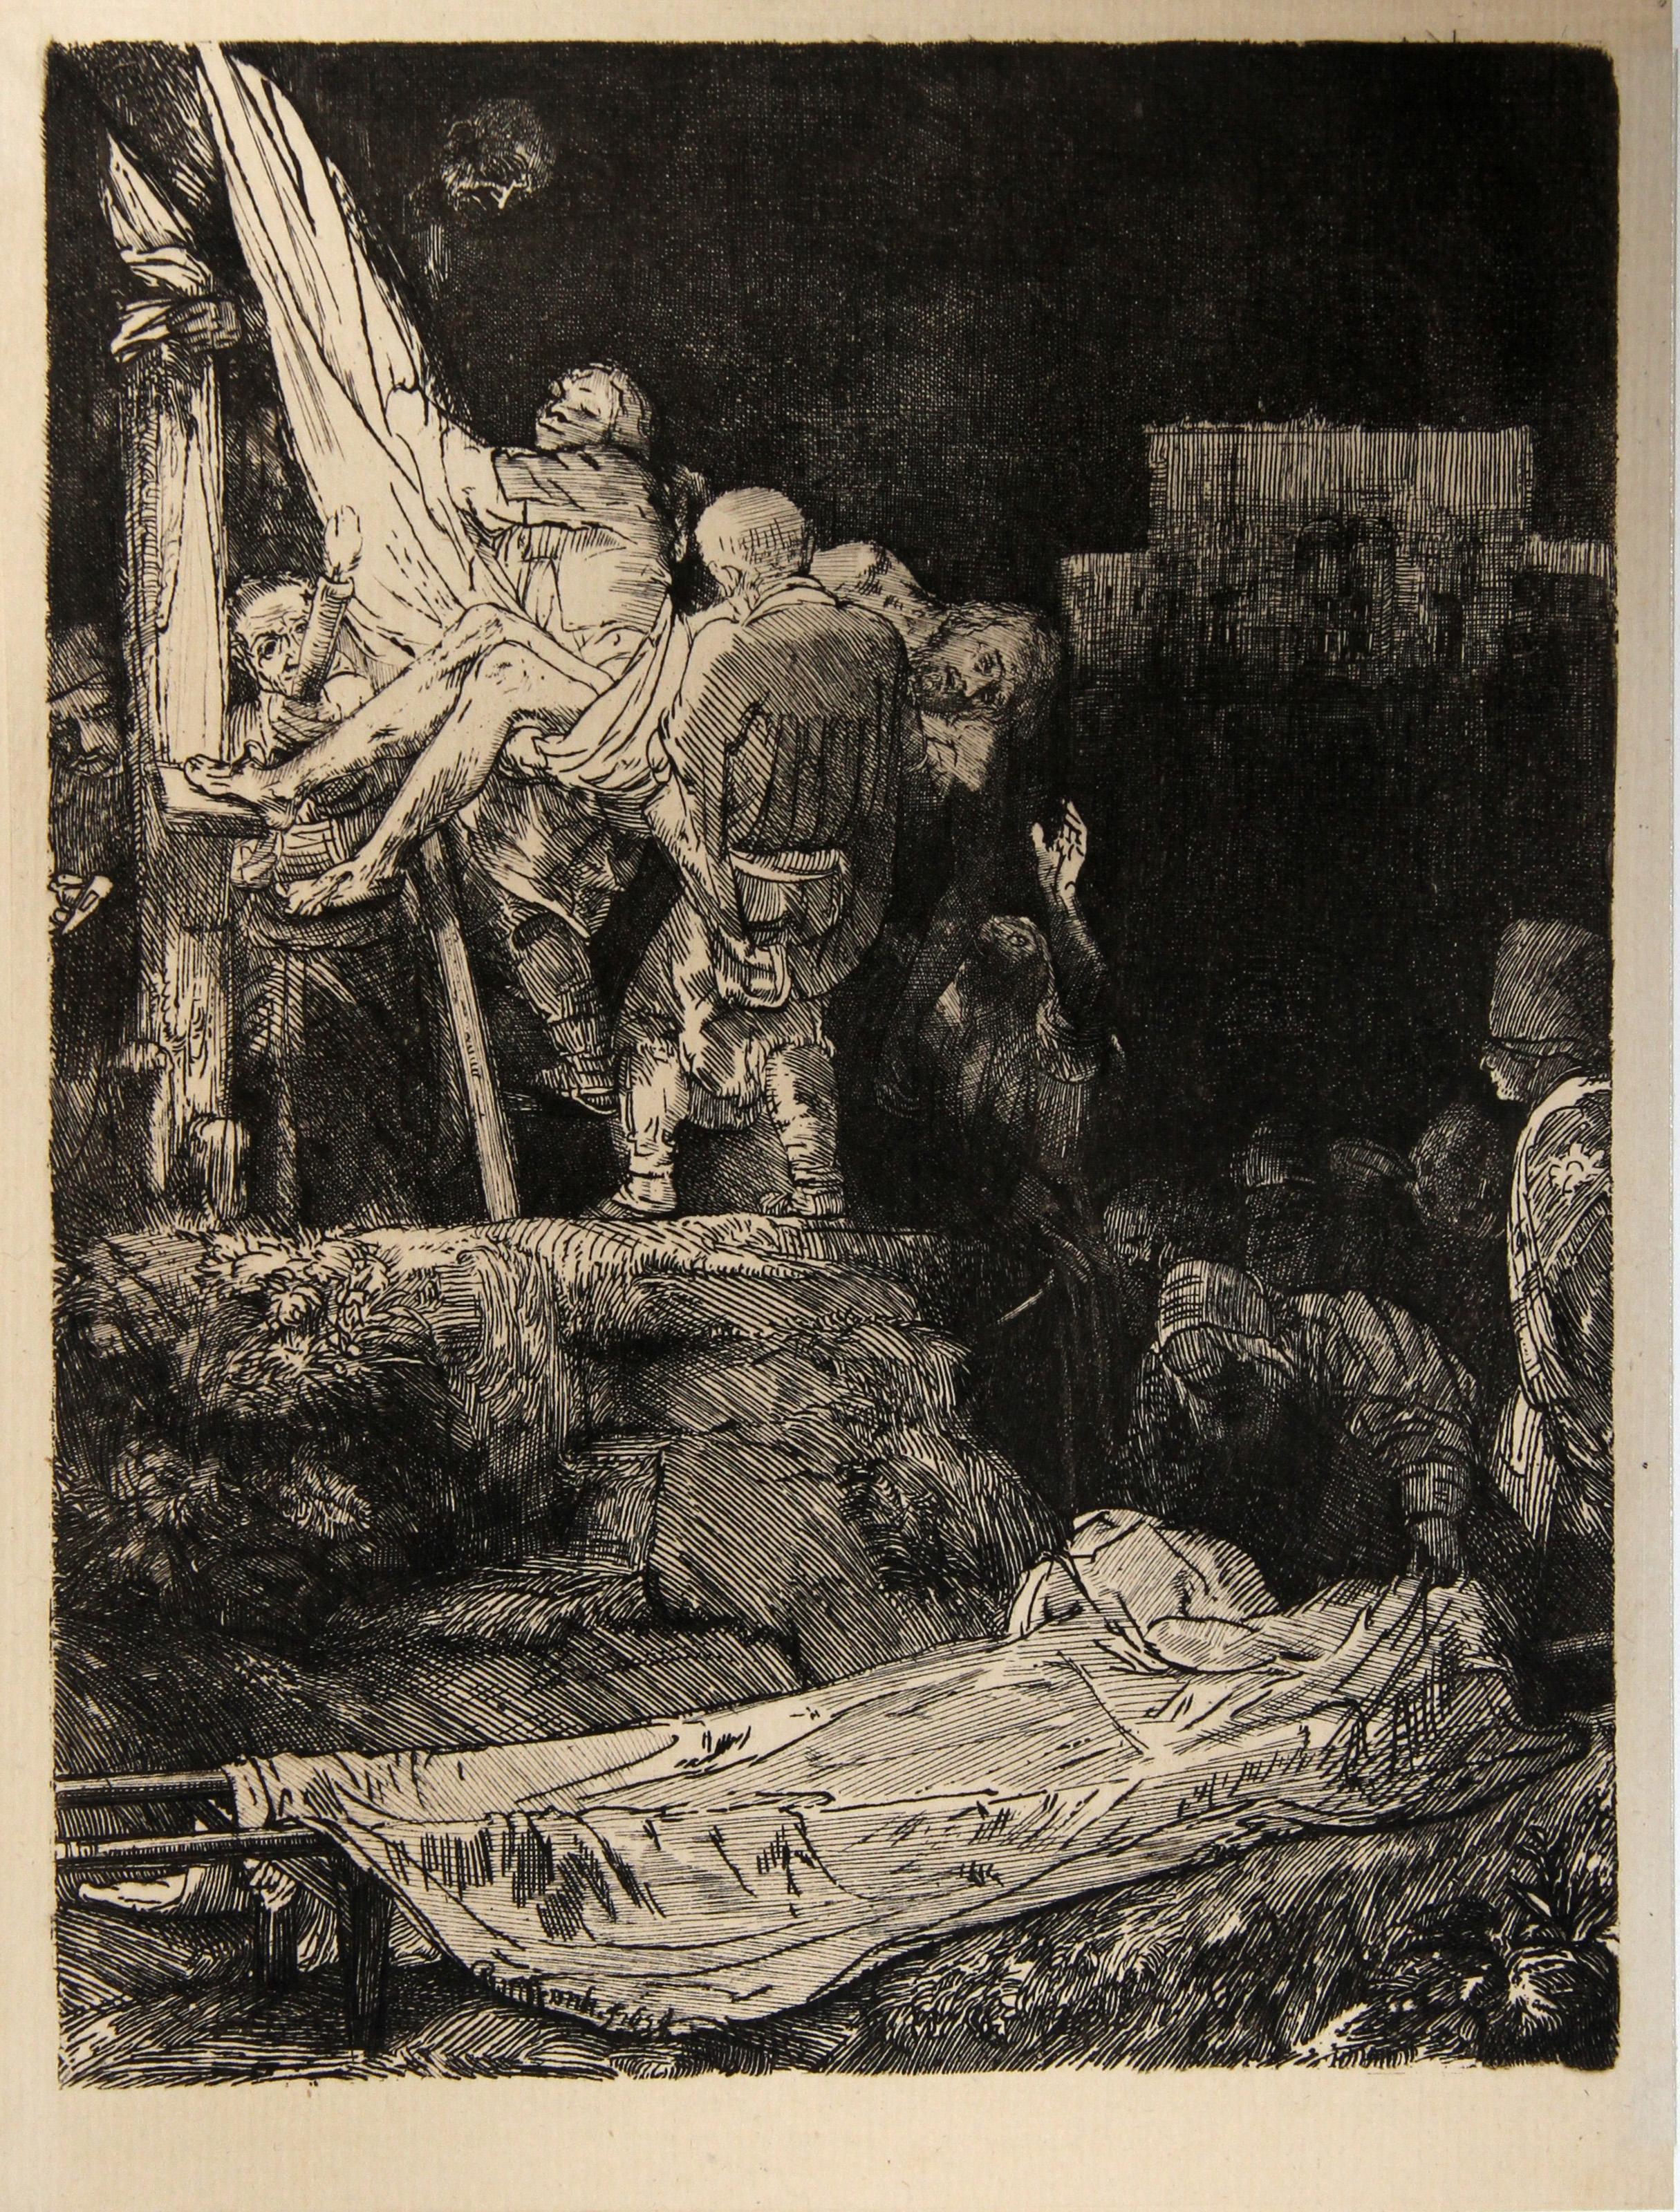 Künstler: Rembrandt van Rijn, nach Amand Durand, Niederländer (1606 - 1669) -  La Descente de Croix Aux Flambeaux (B280), Jahr: 1878 (von Original 1654), Medium: Heliogravüre, Format: 8.25  x 6.25 in. (20.96  x 15,88 cm), Drucker: Amand Durand,